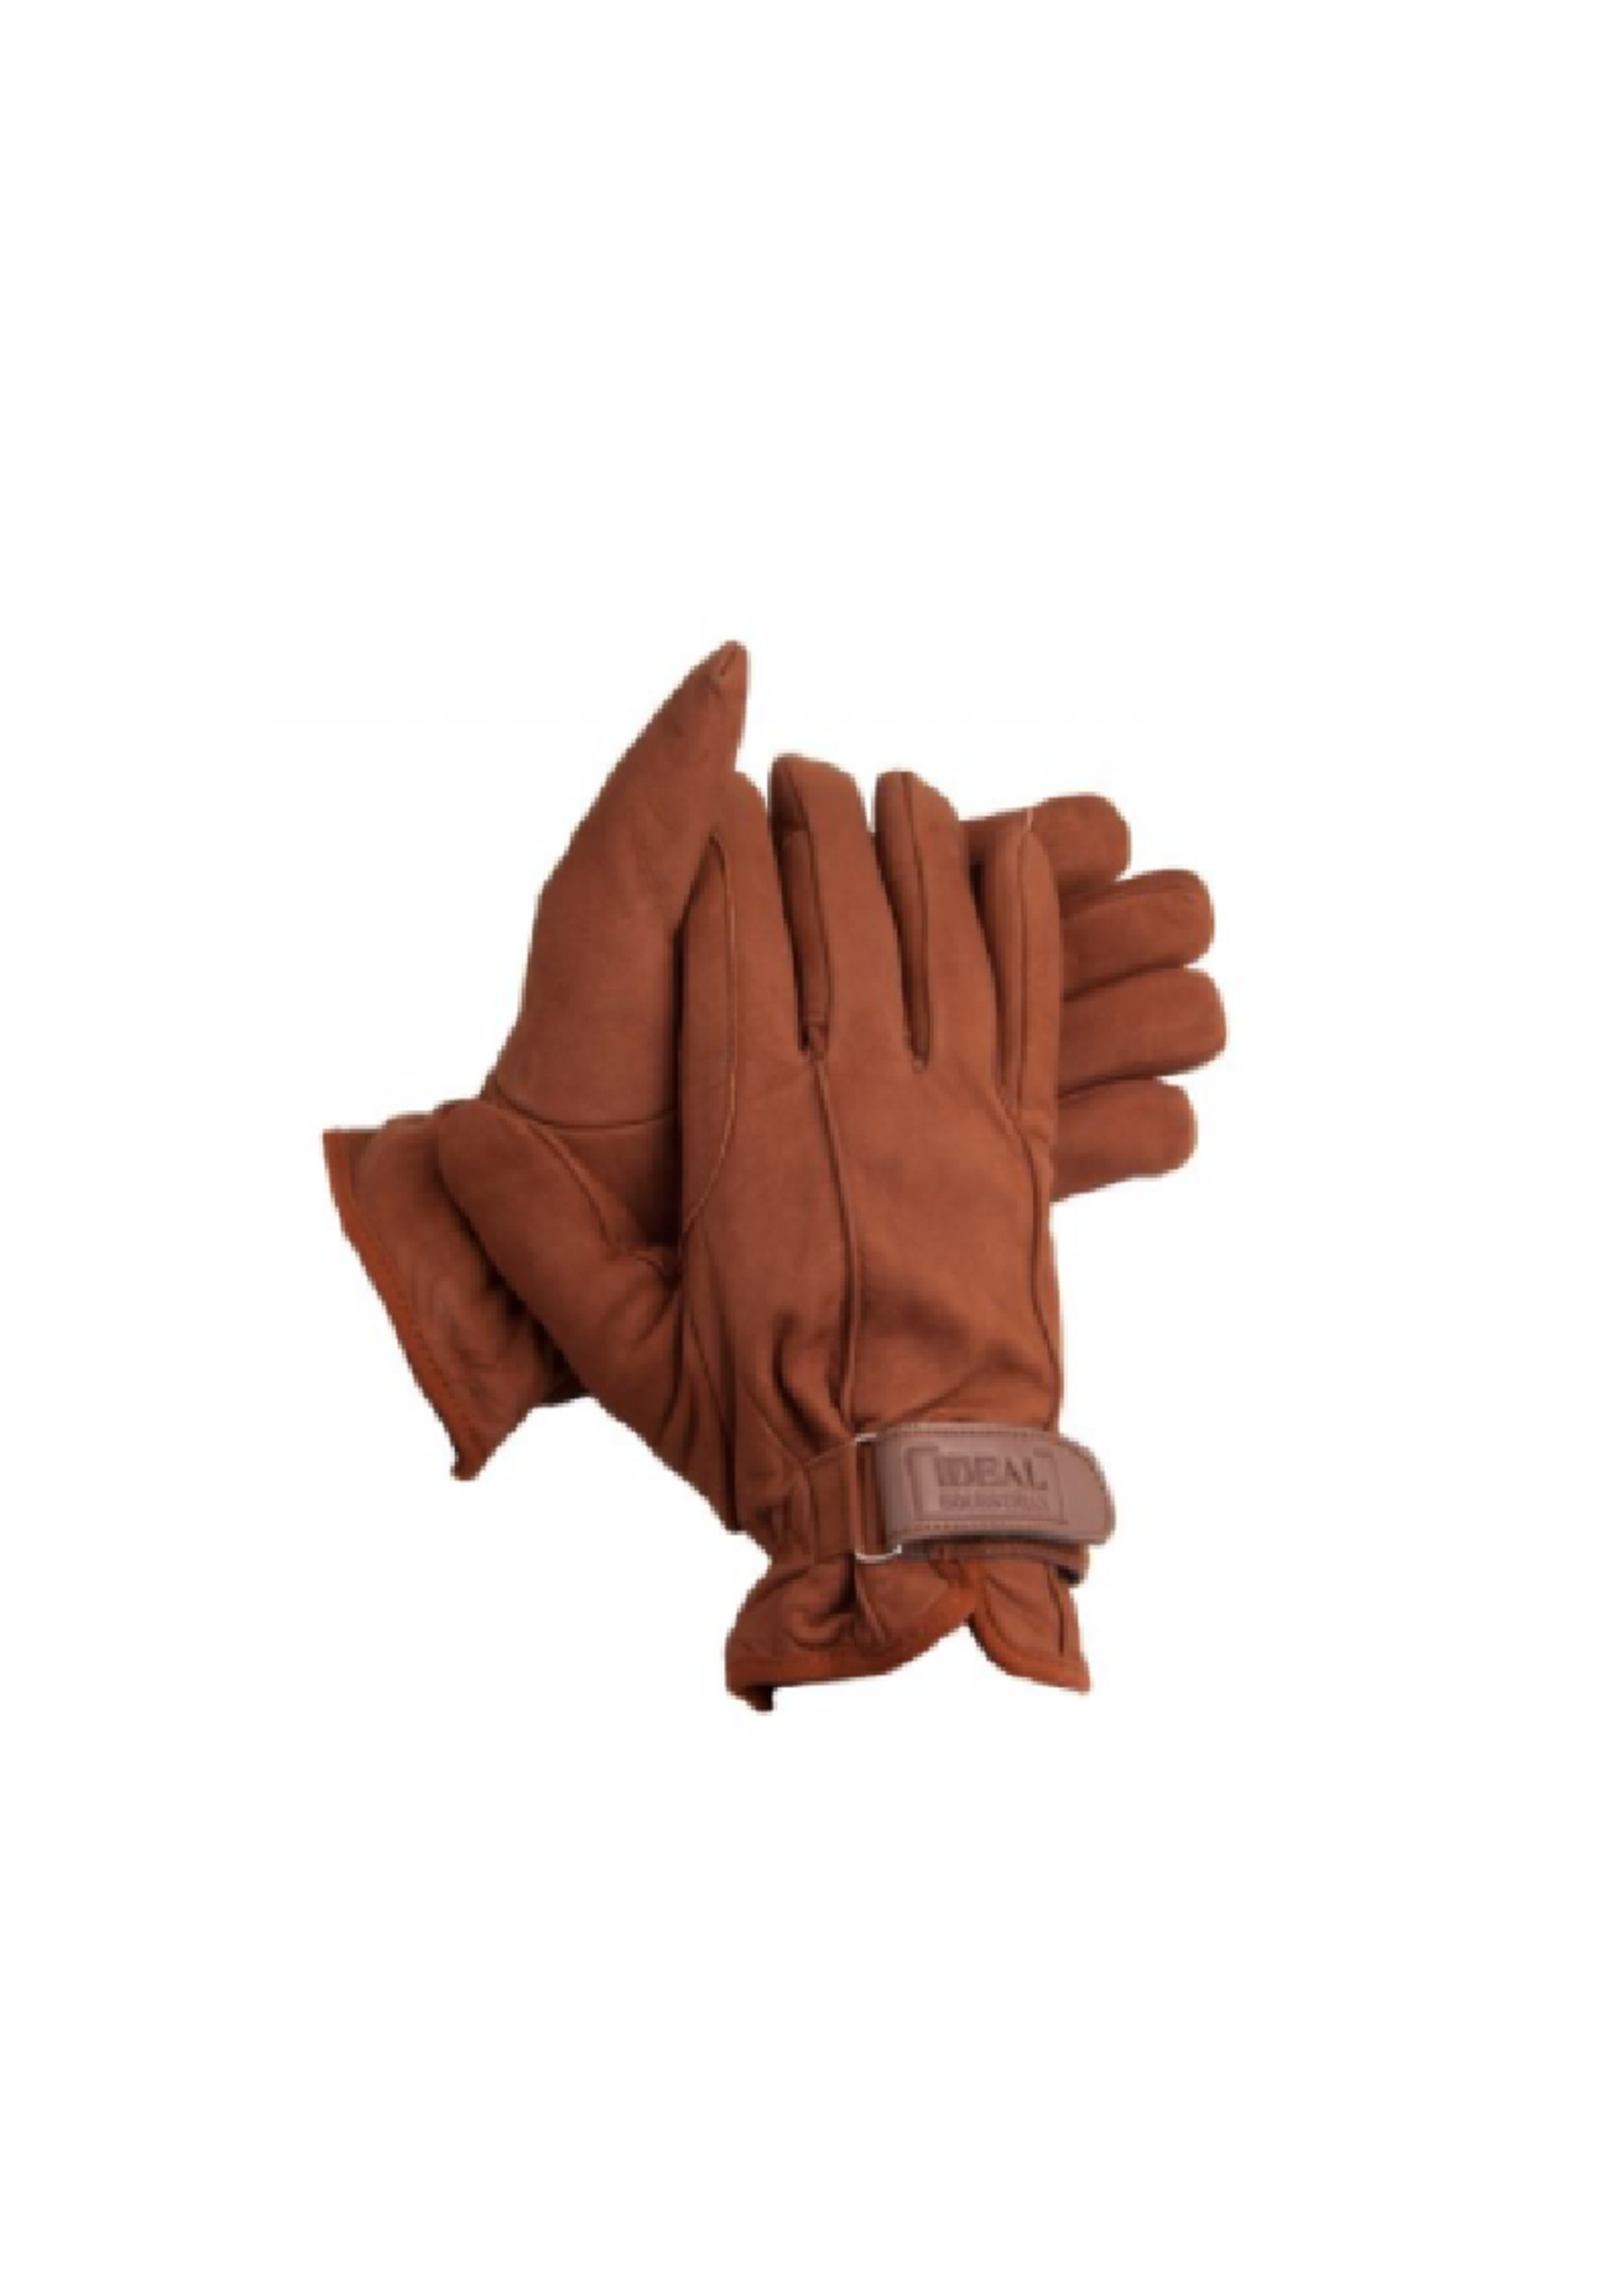 Ideal Ideal Winter Handschoenen